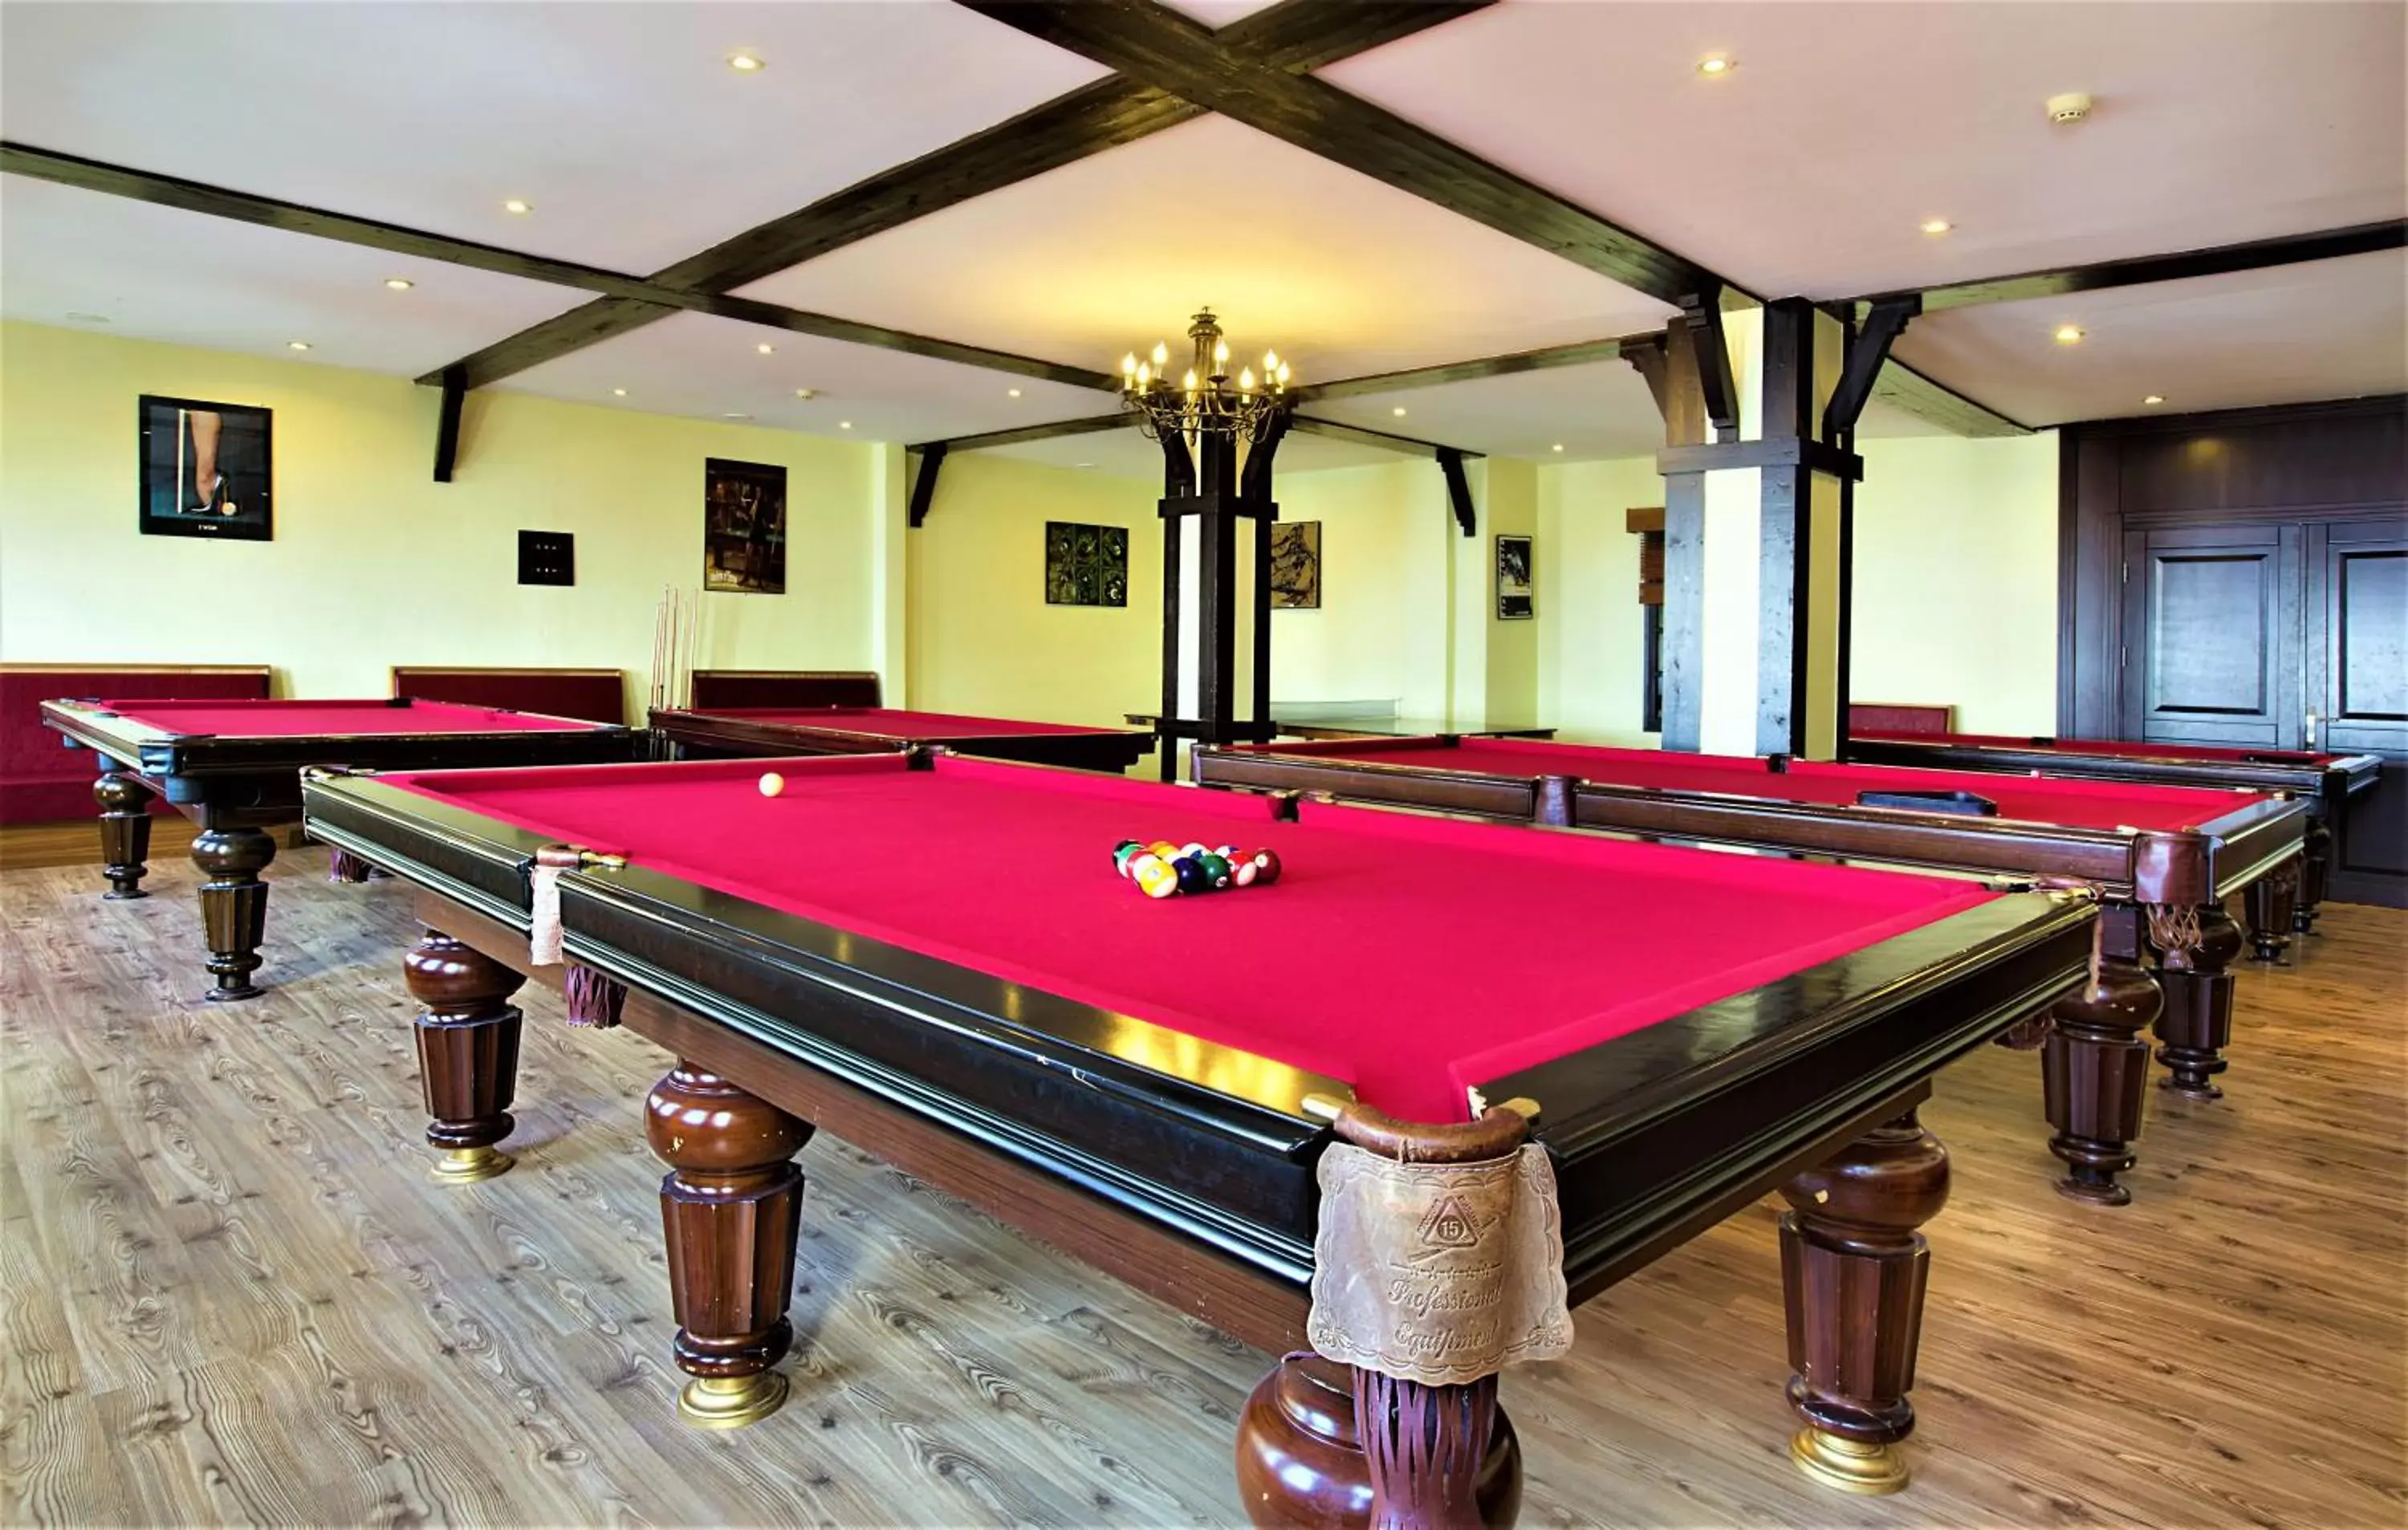 Game Room, Billiards in Dedeman Palandoken Resort Hotel